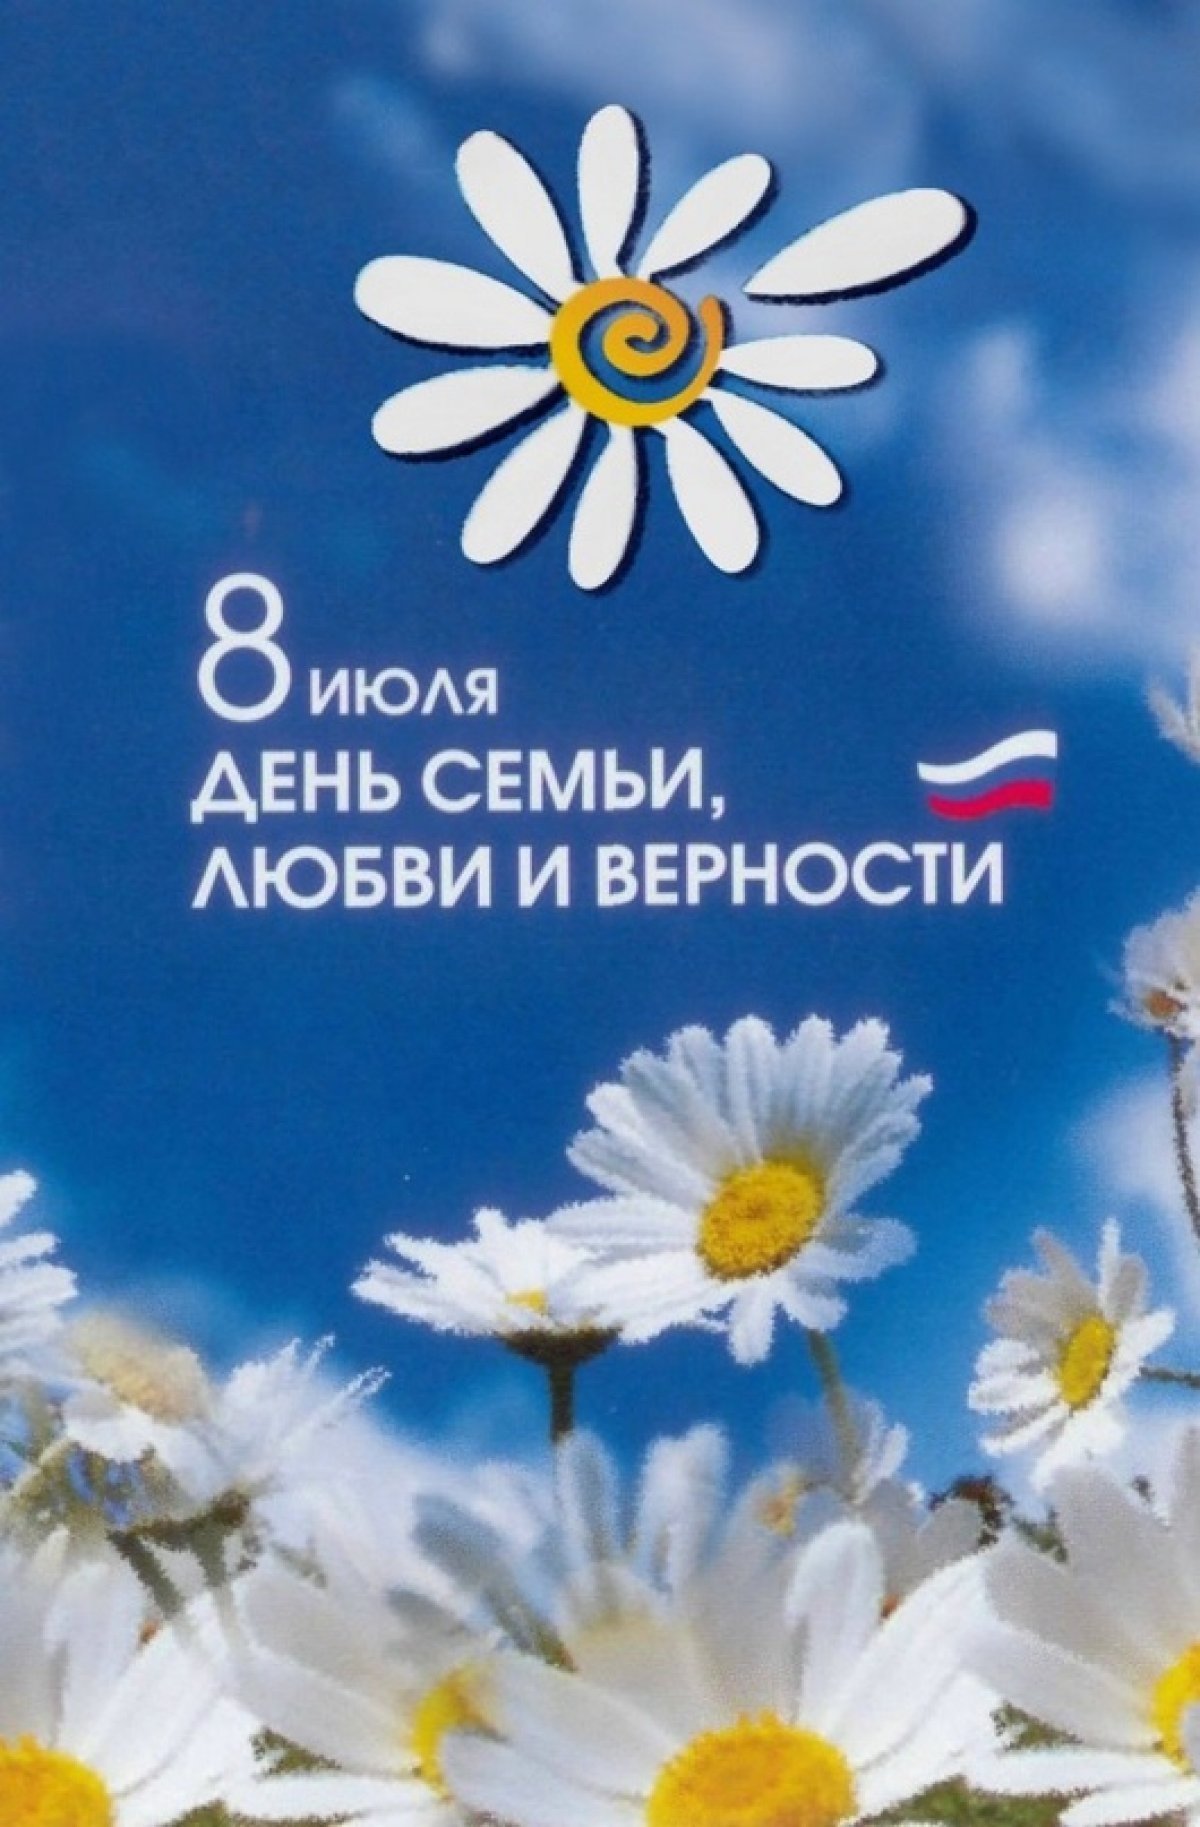 😍Ежегодно 8 июля отмечается важный российский праздник — День семьи, любви и верности. Символично, что впервые он отмечался в 2008 году, который был объявлен в России годом семьи.